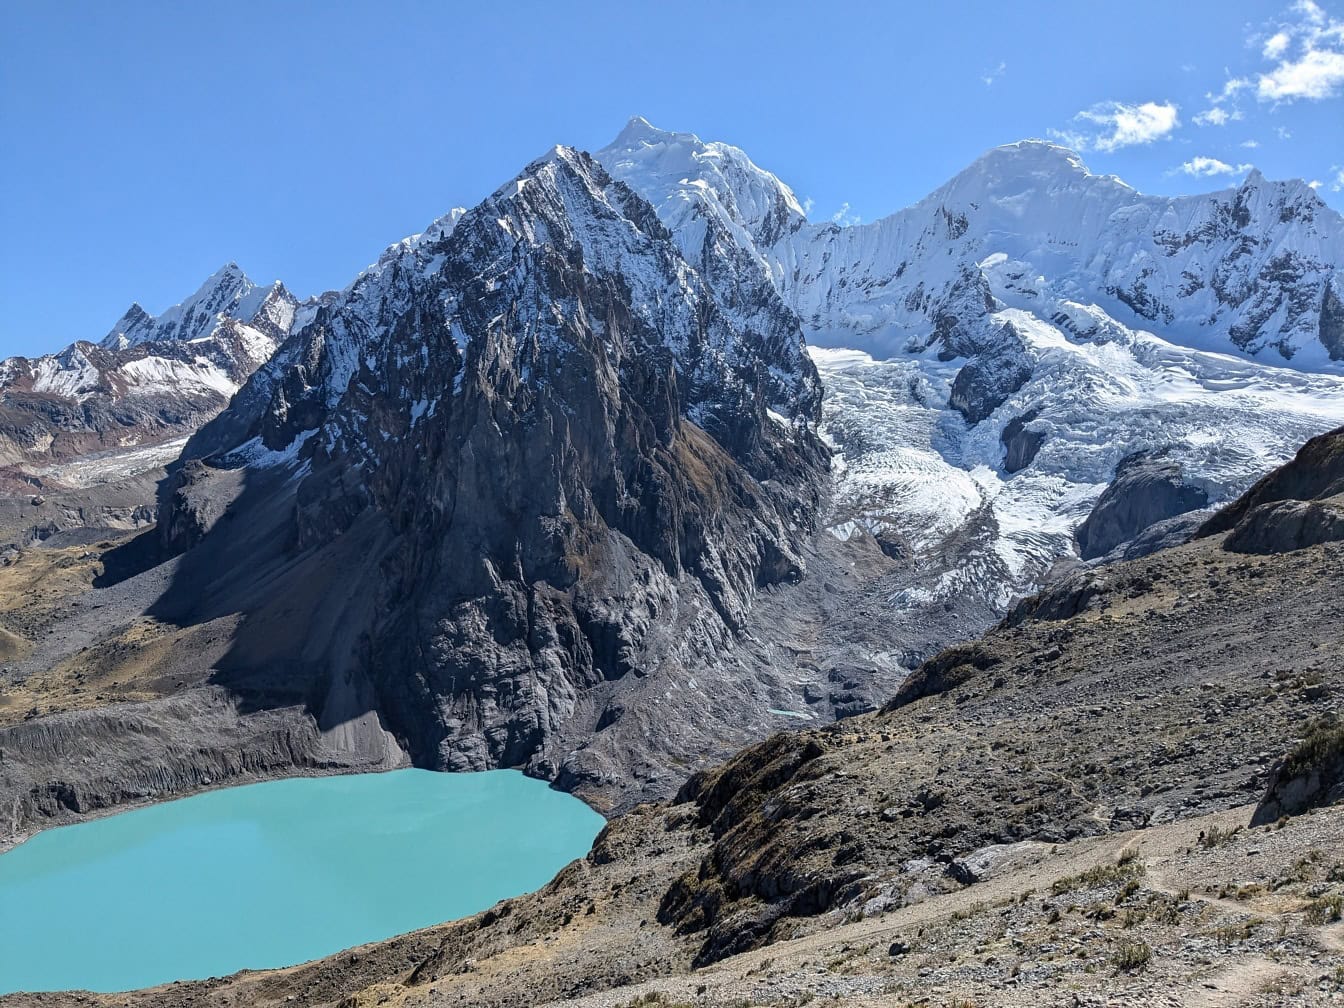 Peru’nun And Dağları’ndaki Cordillera Huayhuash sıradağlarındaki Palcacocha gölündeki dağ zirvelerinin doğal görünümü